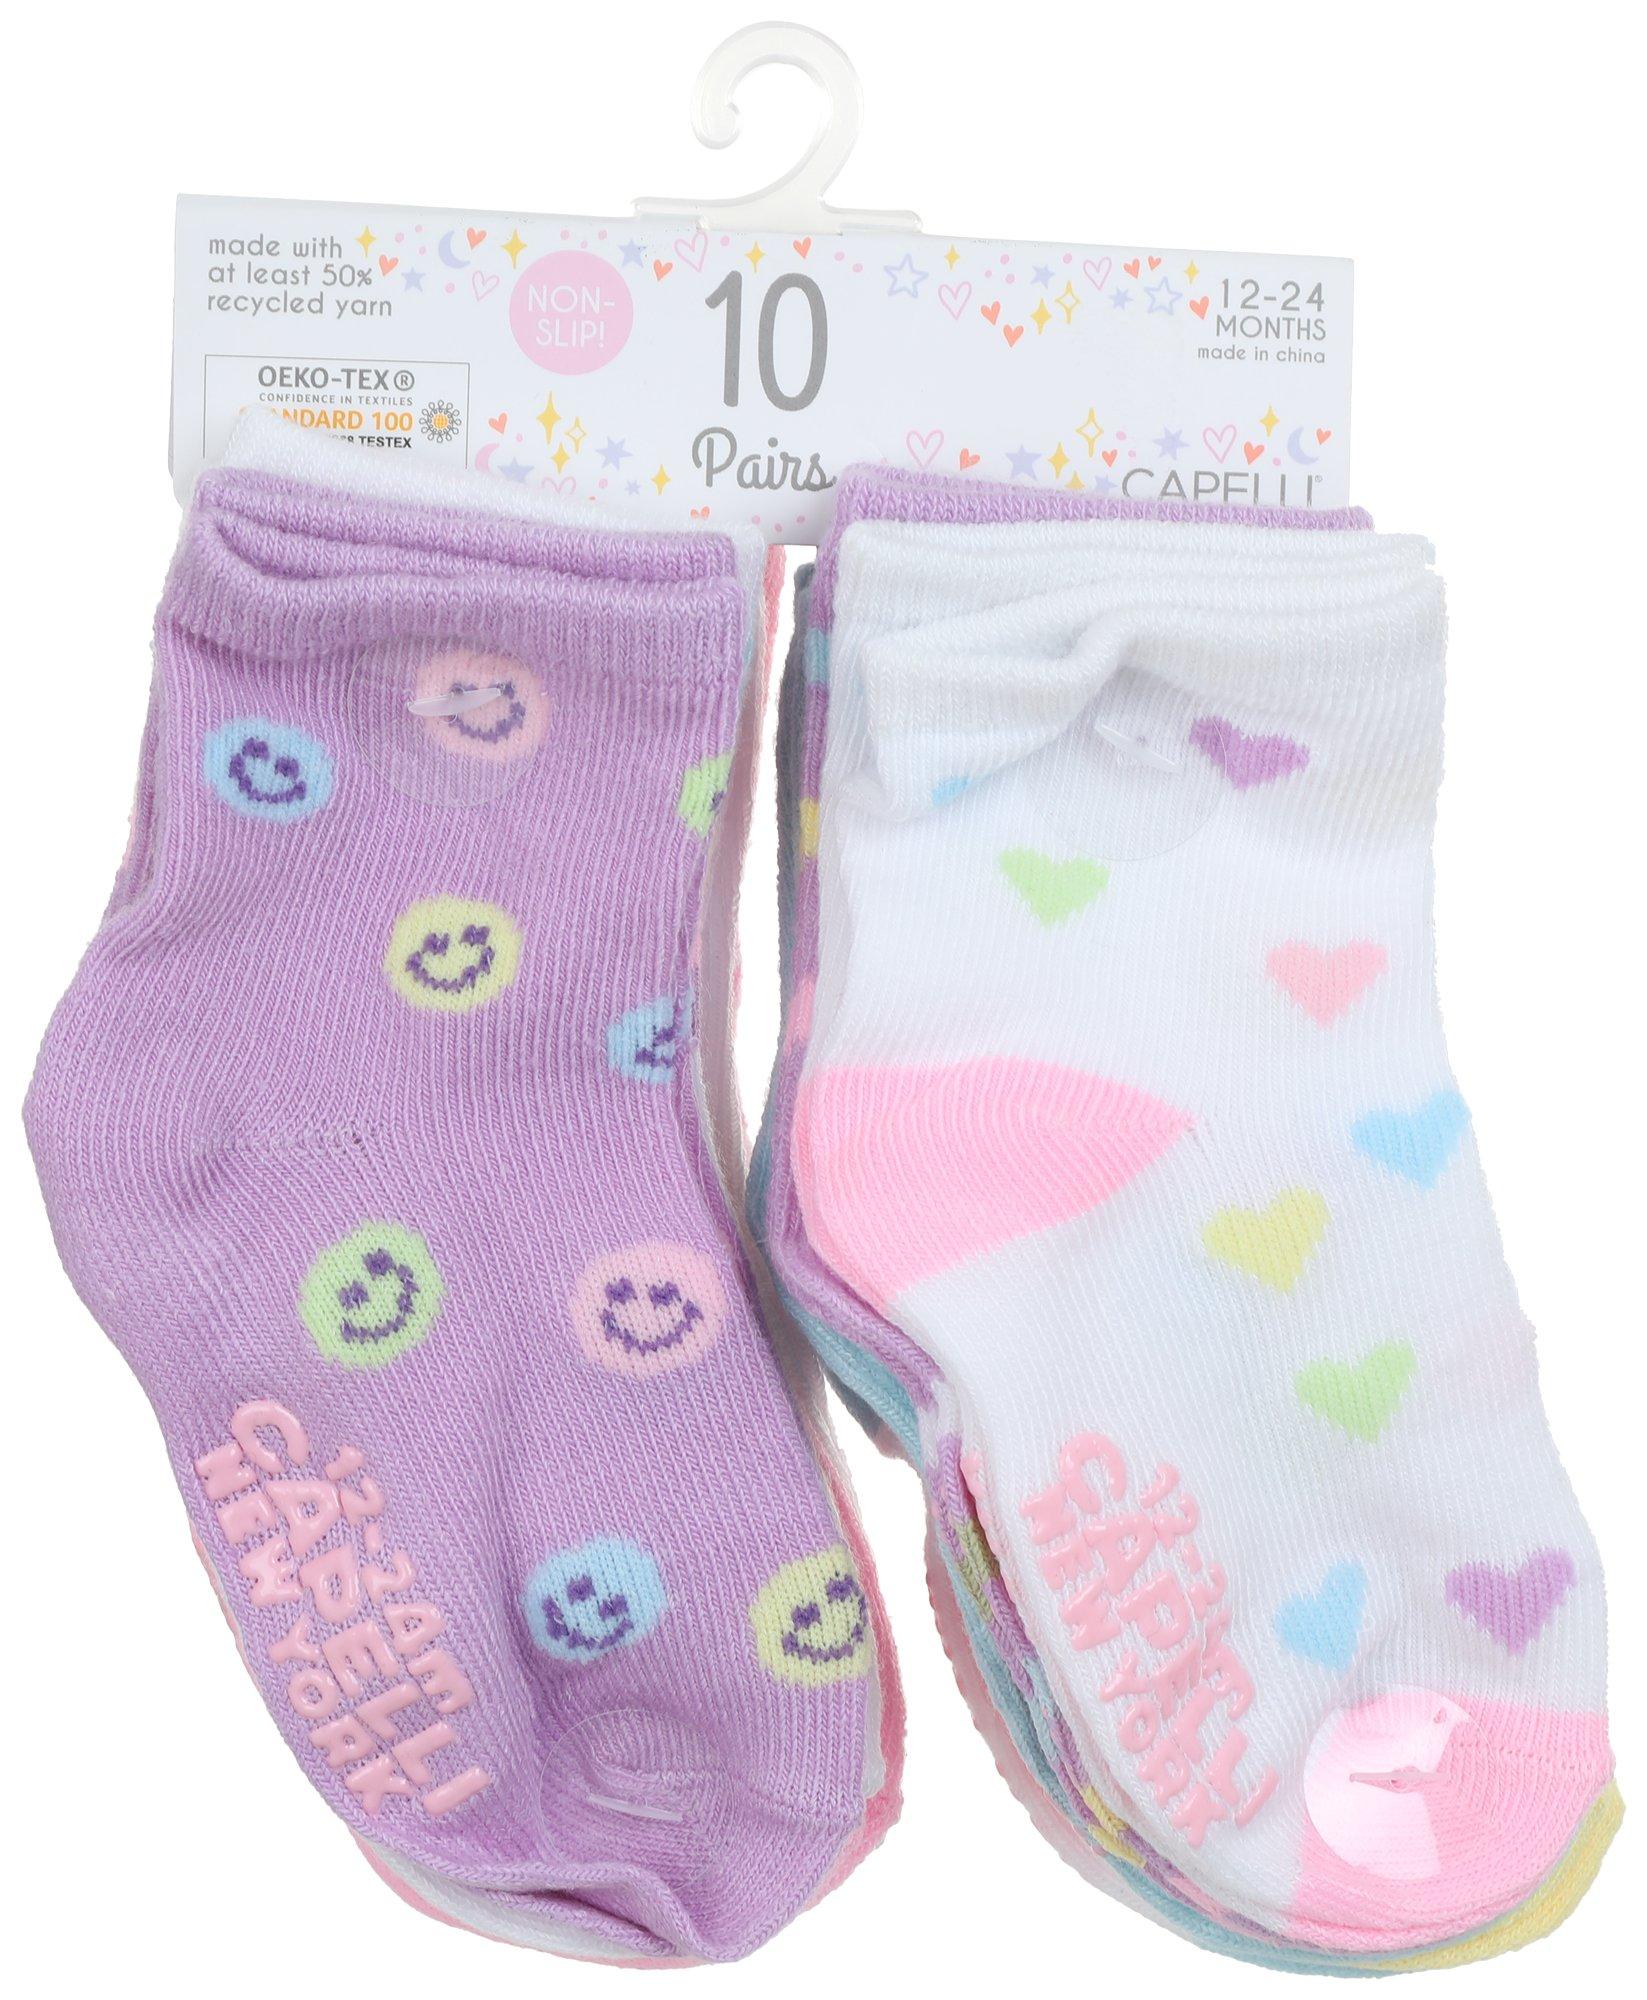 Baby Girls 10 Pk Socks